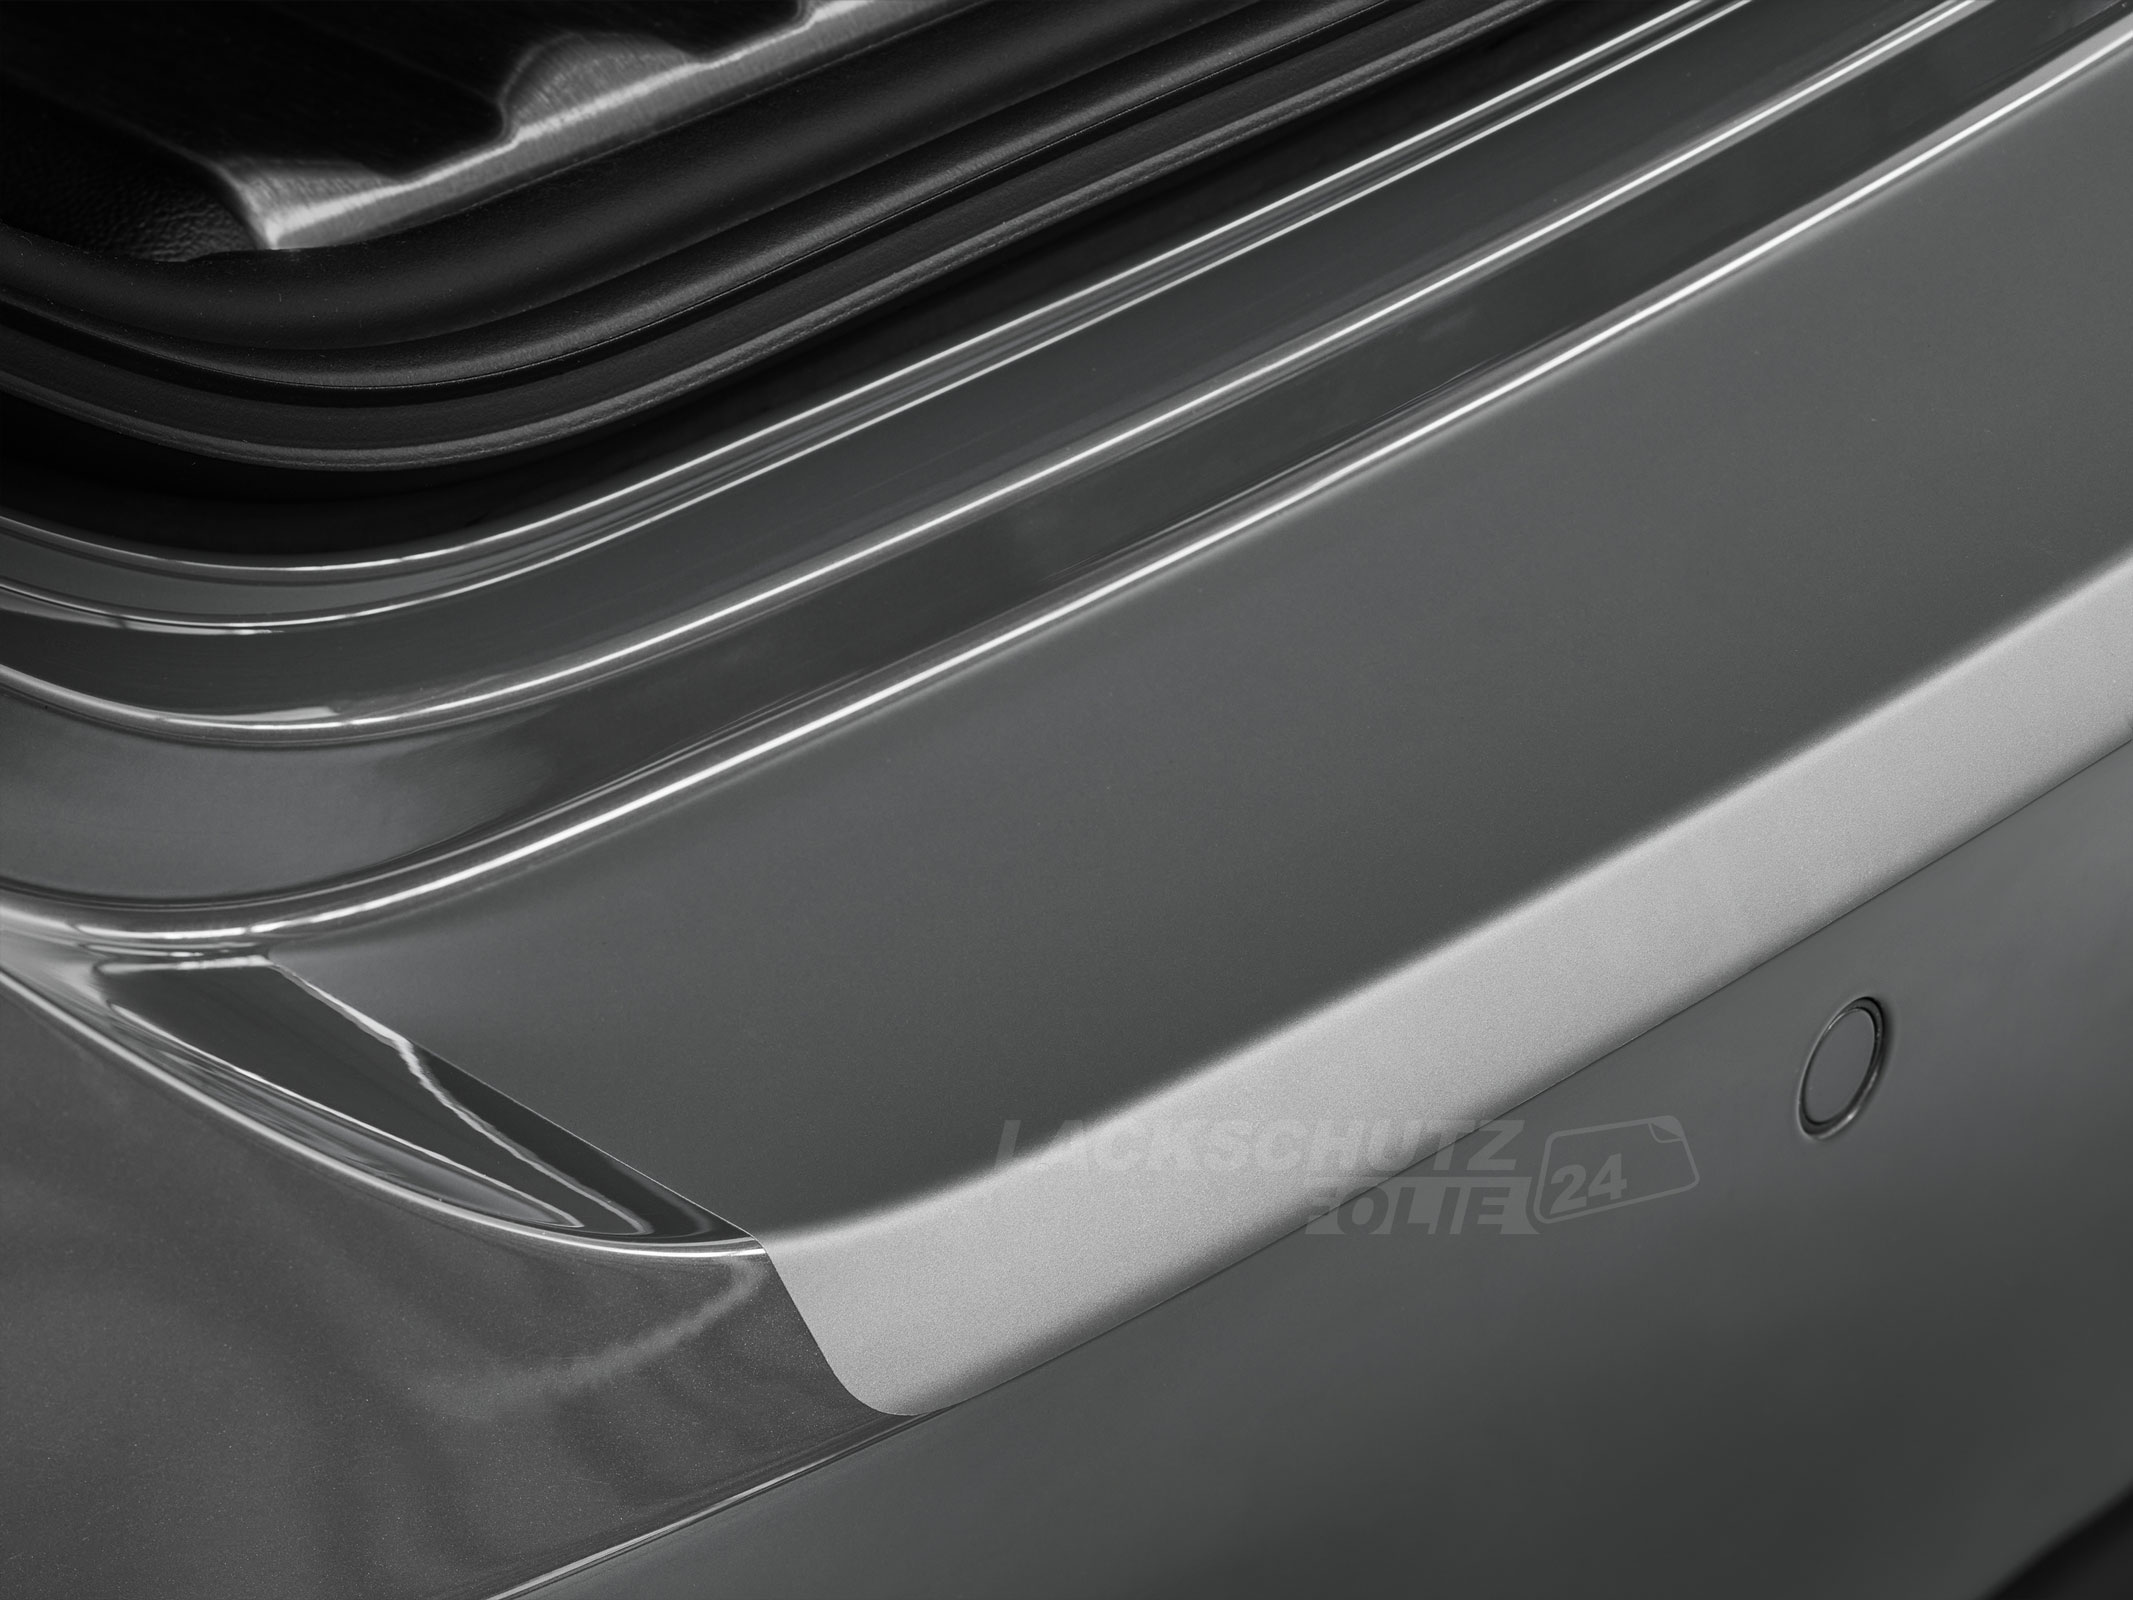 Ladekantenschutzfolie - Transparent Glatt MATT 110 µm stark  für Volvo S80 ab BJ 2013